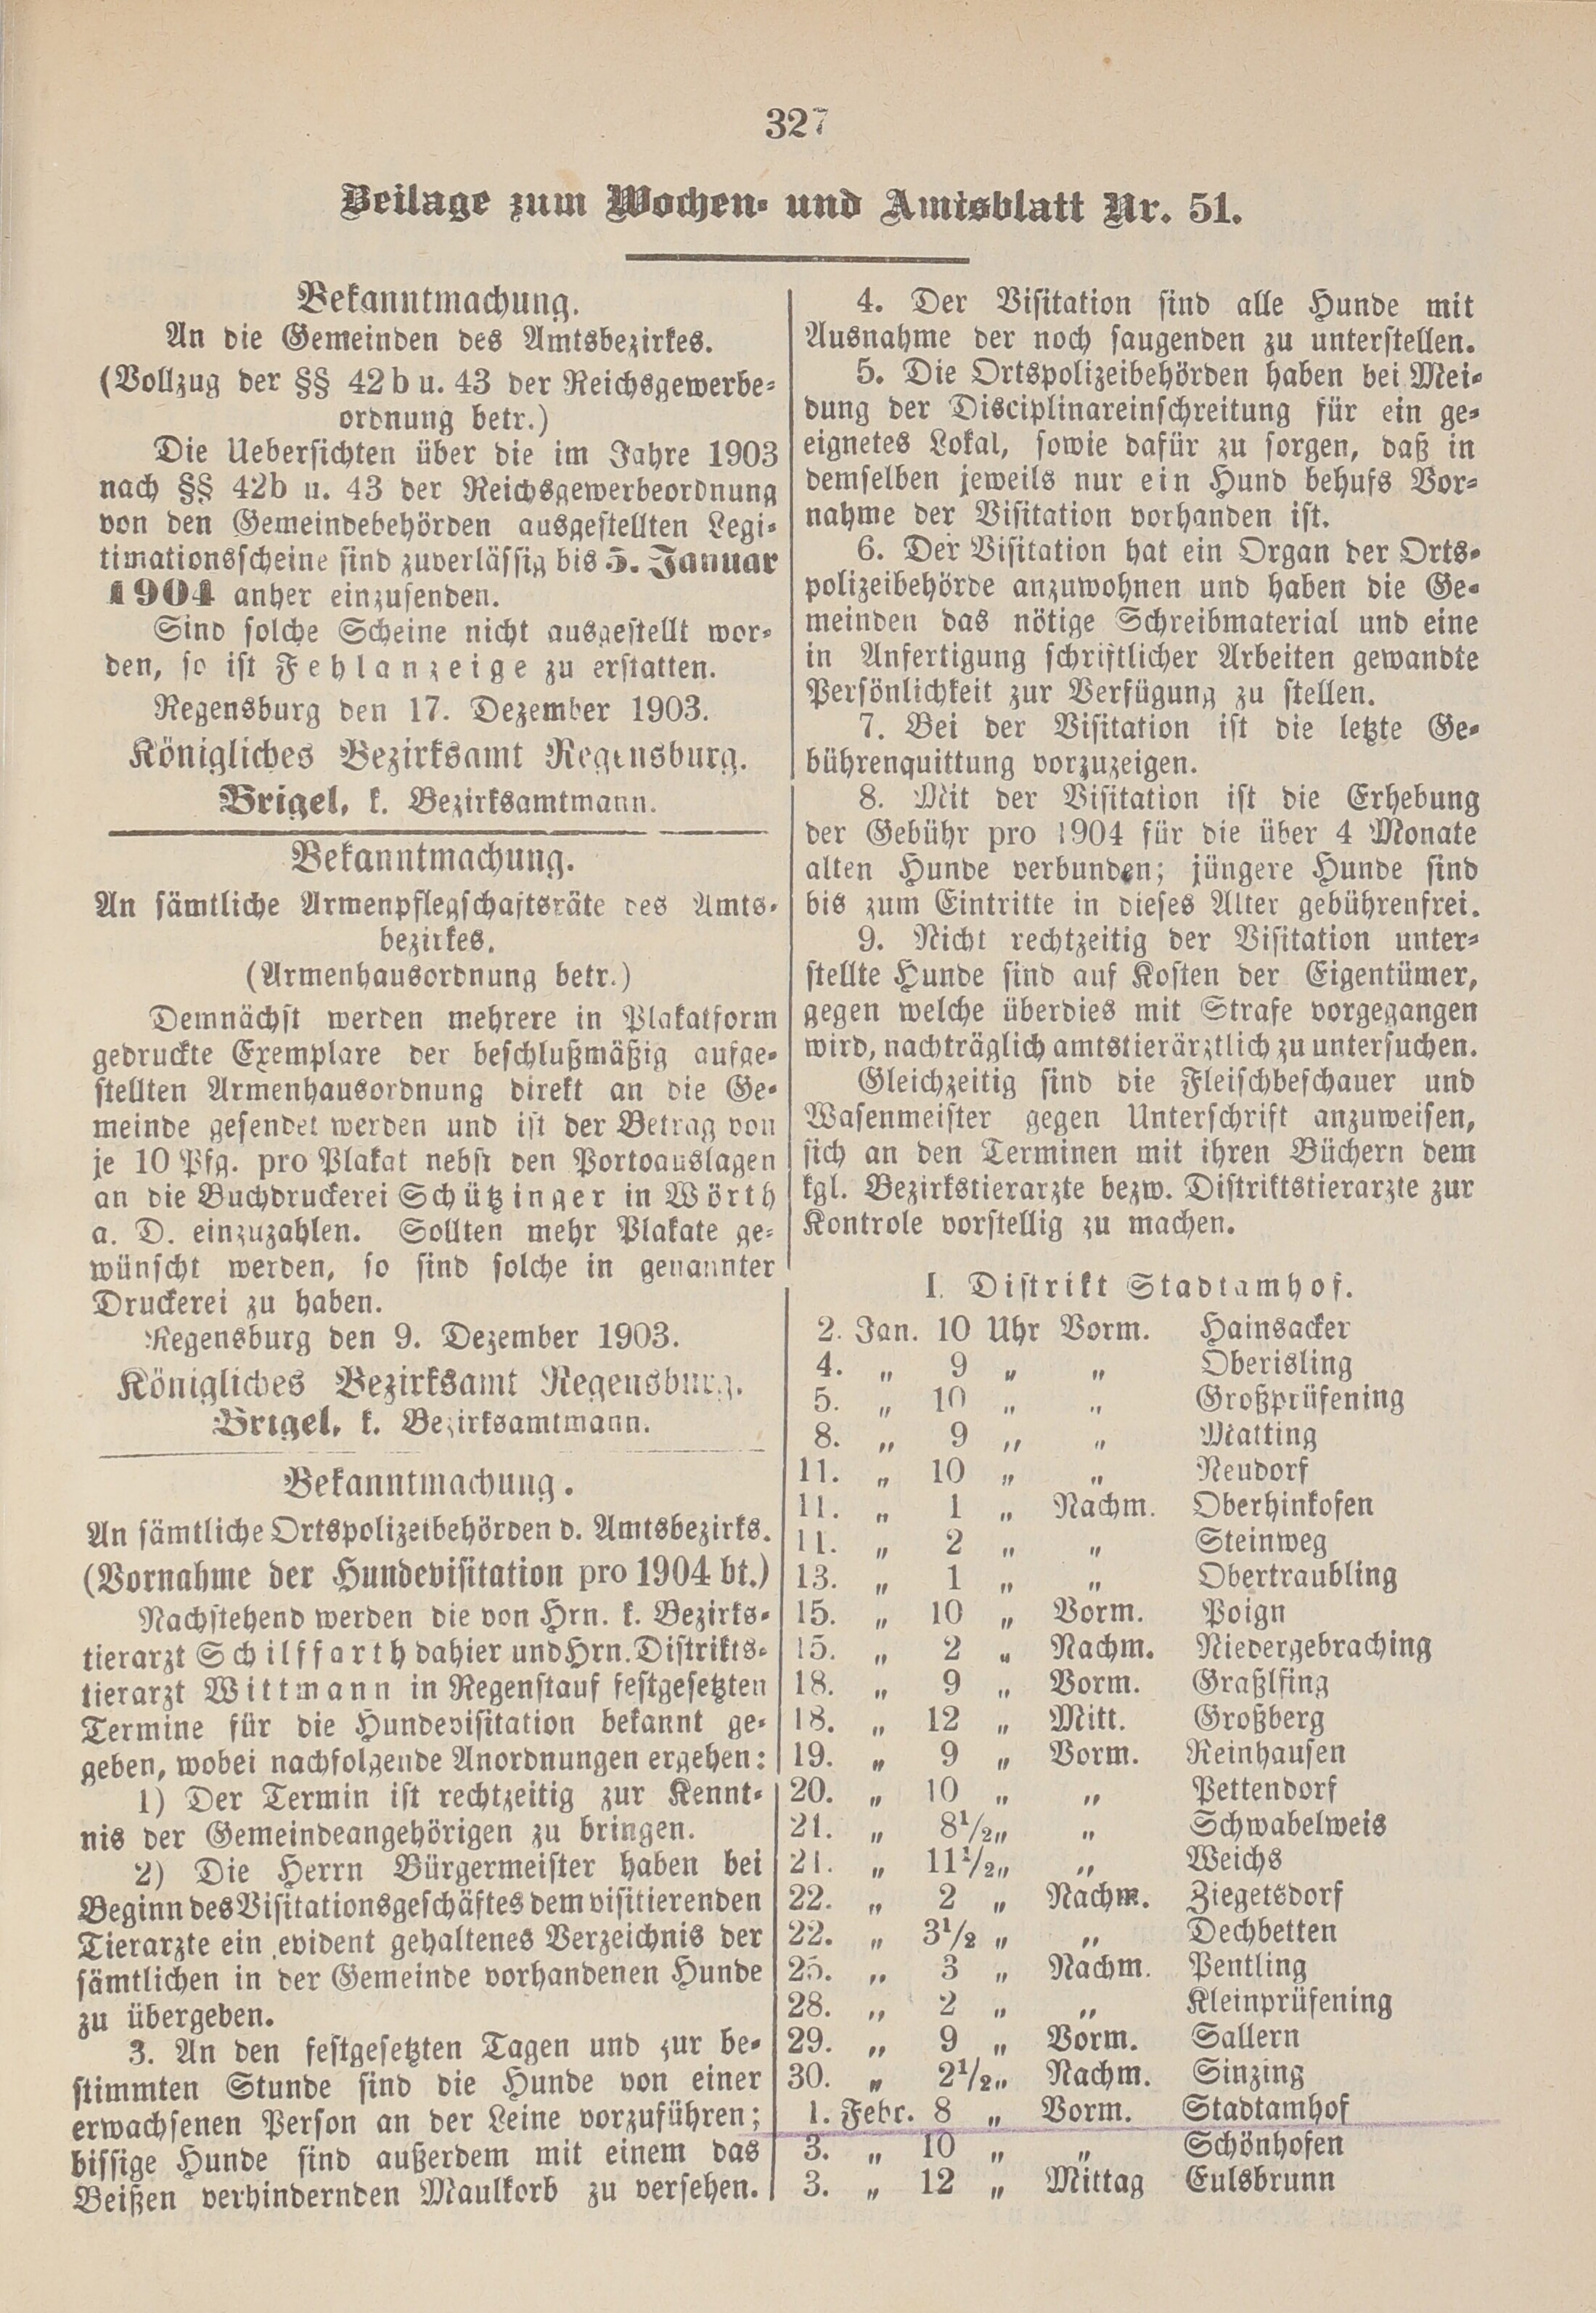 5. amtsblatt-stadtamhof-regensburg-1903-12-20-n51_3460